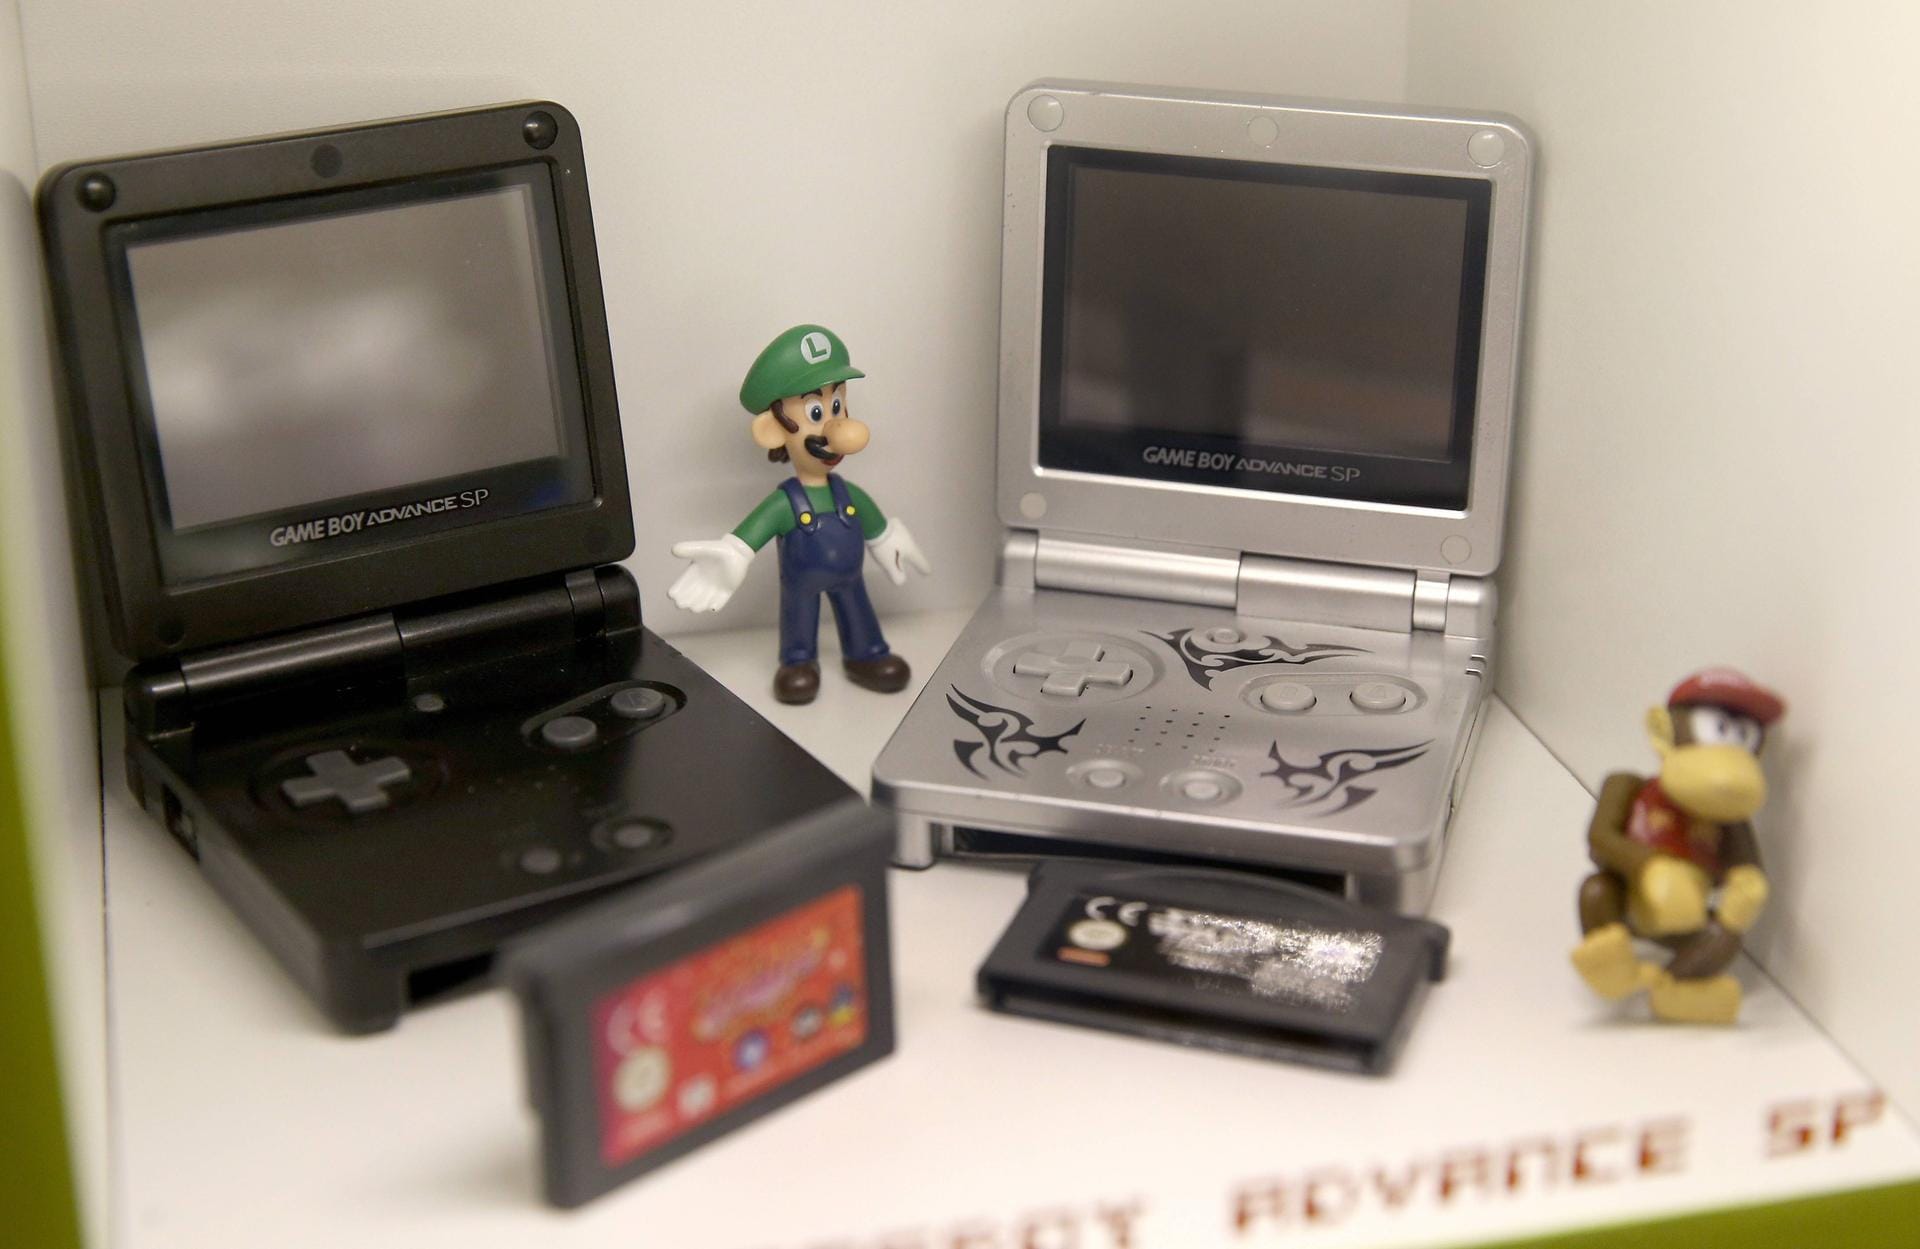 Der Game Boy Advance SP war die erste überarbeitete Version des Game Boy Advance. Im Vergleich zum Vorgänger ließ sich der SP zusammenklappen und ließ sich so platzsparend in die Tasche stecken. Auch hatte der SP einen Akku verbaut, statt wie bisher Batterien zu nutzen. Und: Nintendo stattete den SP mit Hintergrundbeleuchtung aus.